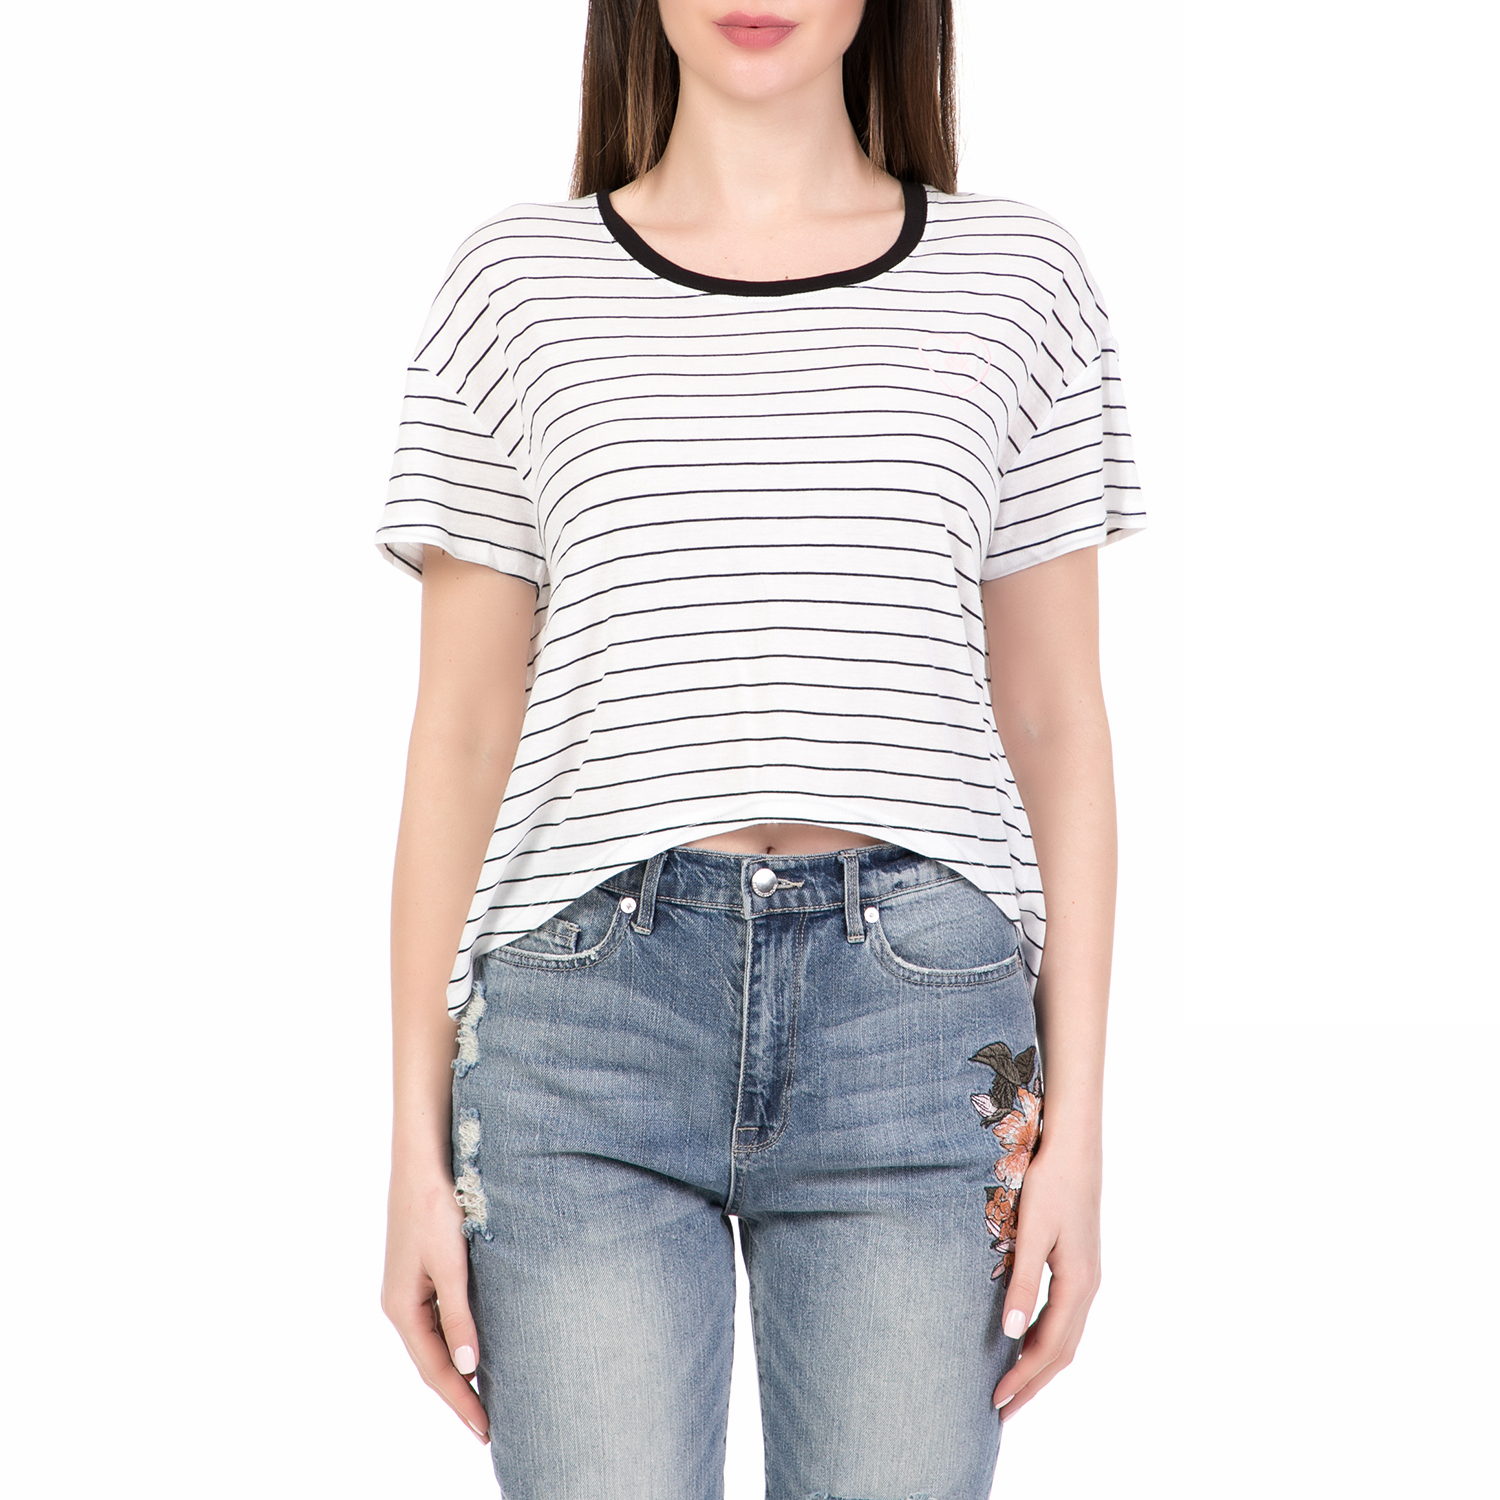 JUICY COUTURE - Γυναικεία κοντομάνικη μπλούζα SLIM STRIPE JUICY COUTURE λευκή-μαύρη Γυναικεία/Ρούχα/Μπλούζες/Κοντομάνικες